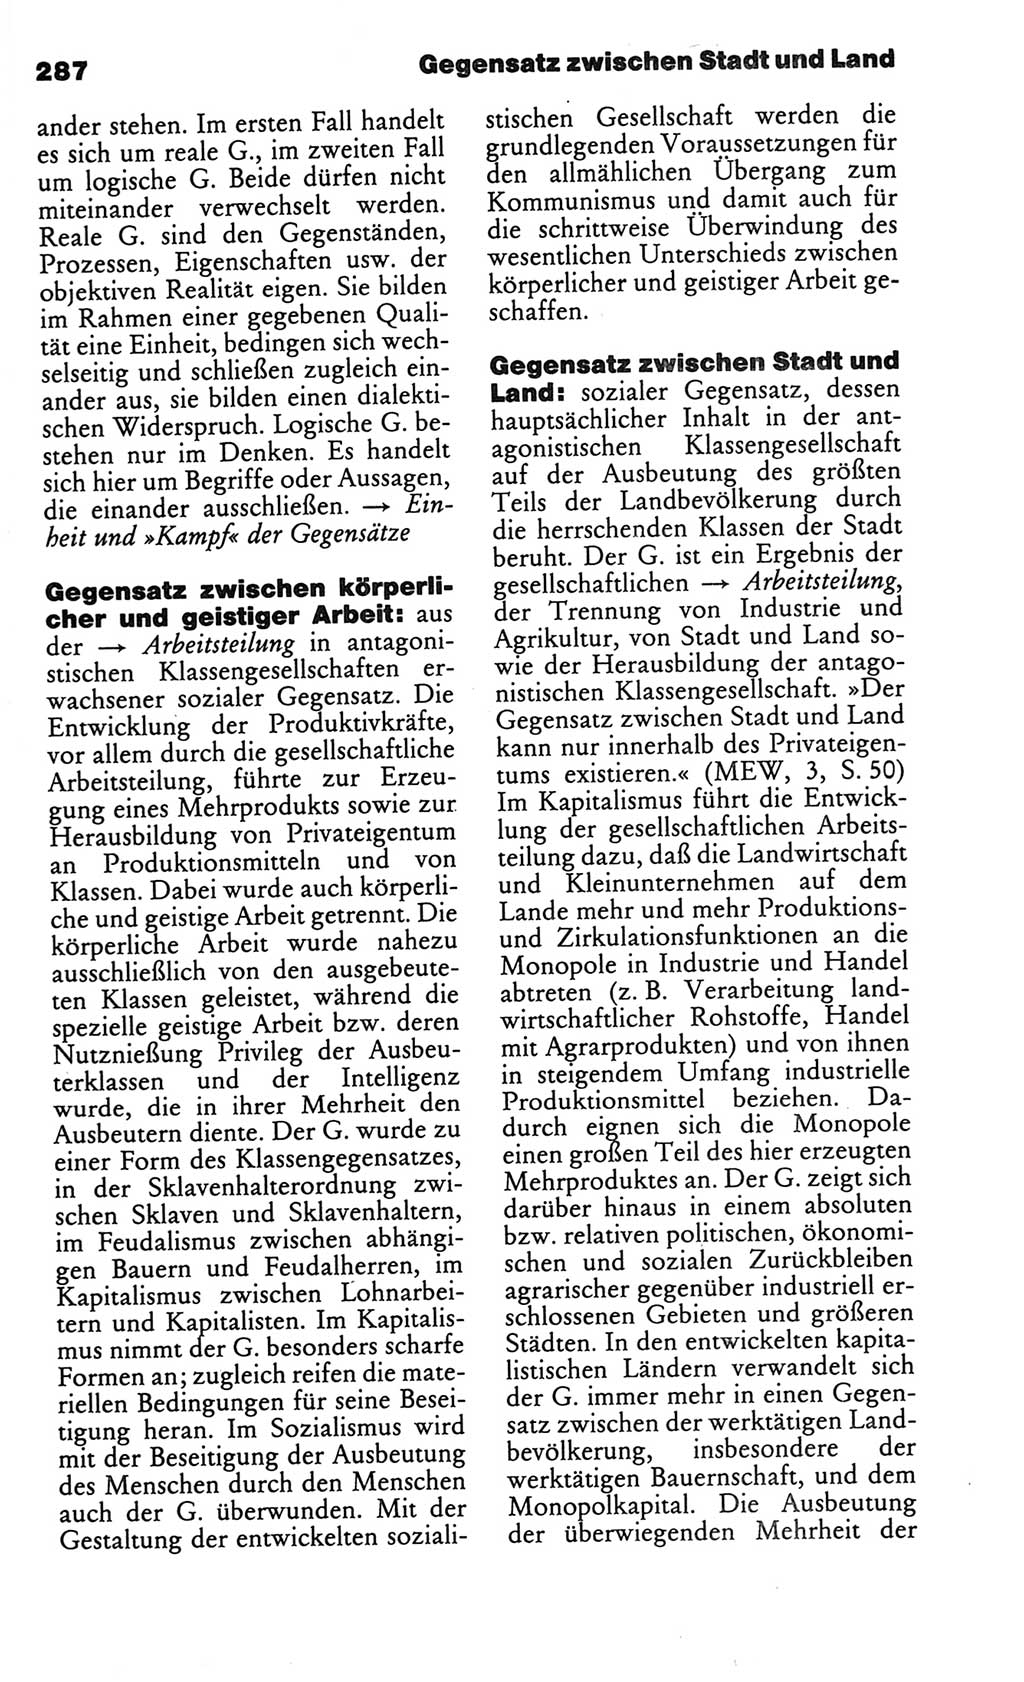 Kleines politisches Wörterbuch [Deutsche Demokratische Republik (DDR)] 1986, Seite 287 (Kl. pol. Wb. DDR 1986, S. 287)